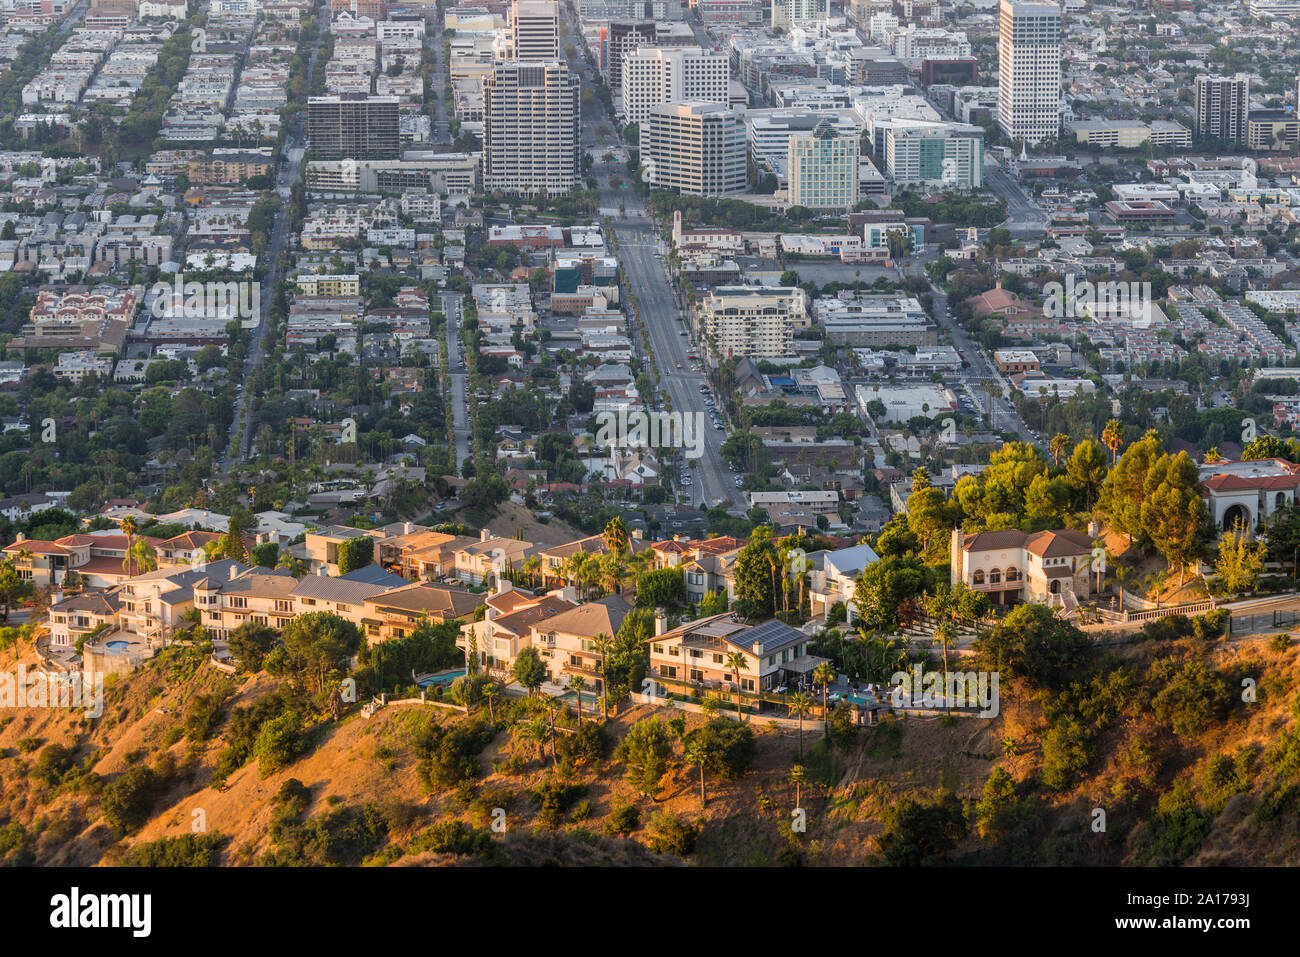 Hilltop view homes au-dessus du centre-ville de Glendale, près de Los Angeles en Californie du Sud. Banque D'Images